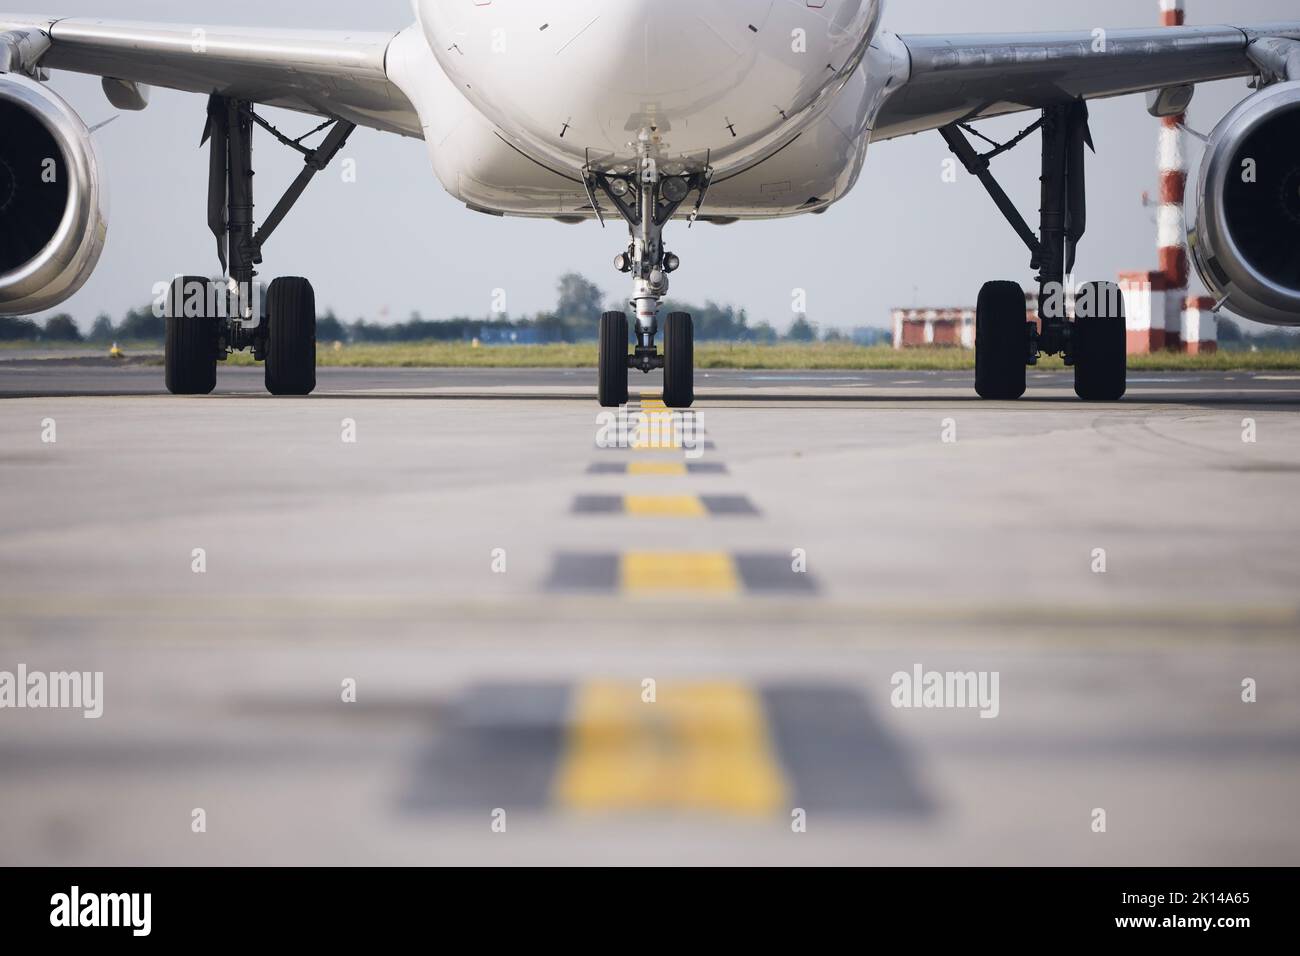 Vista frontale dell'aereo all'aeroporto. Aeroplano commerciale tassando da pista a cancello. Foto Stock